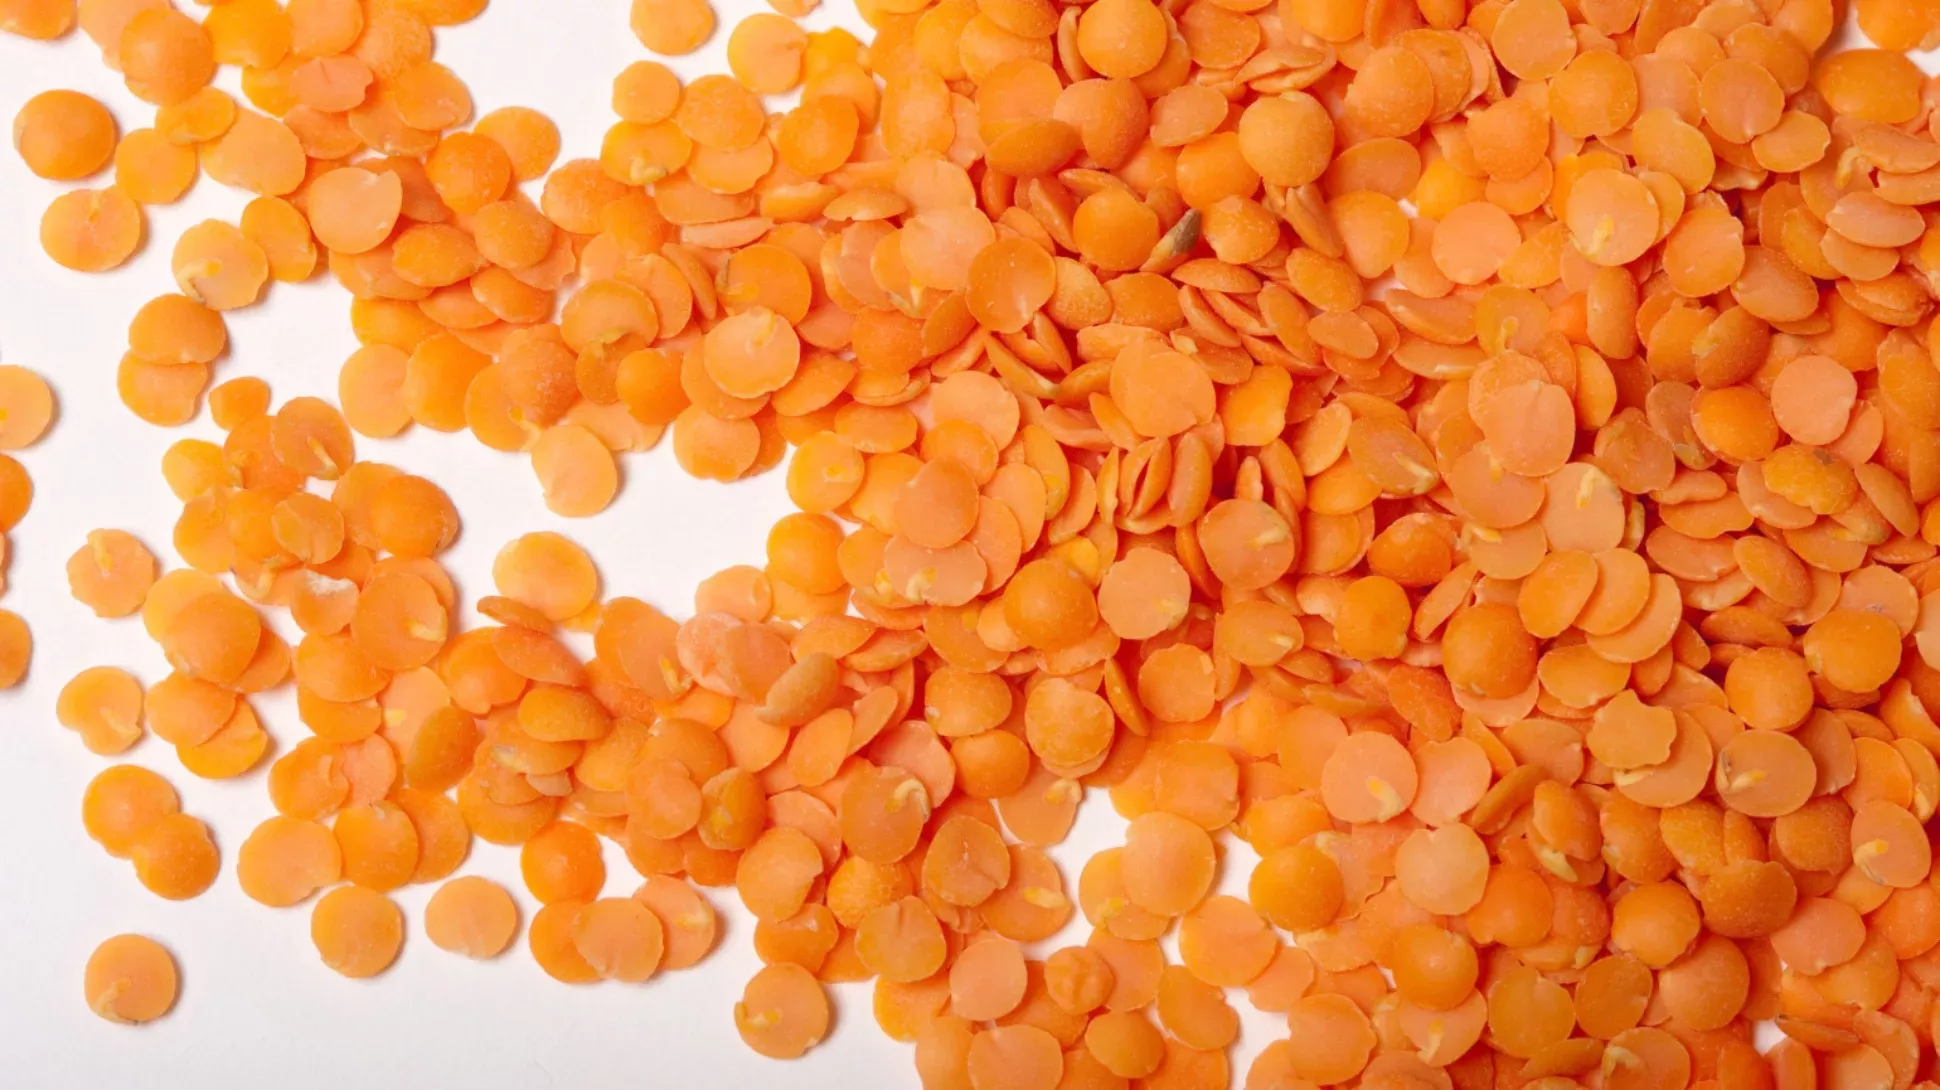 A close up shot of red orange lentils